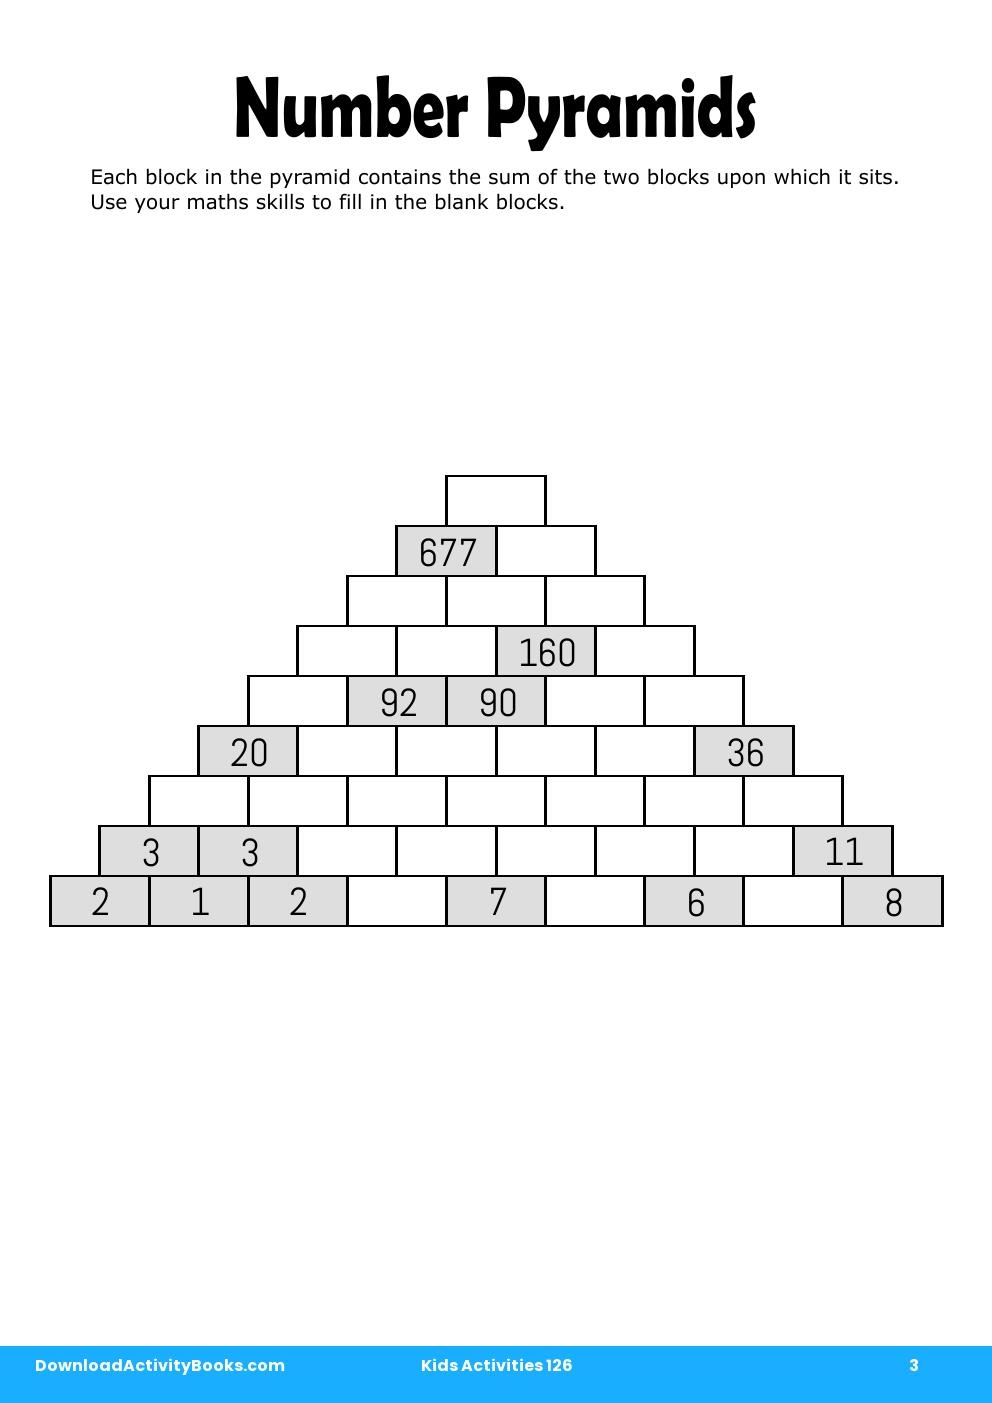 Number Pyramids in Kids Activities 126